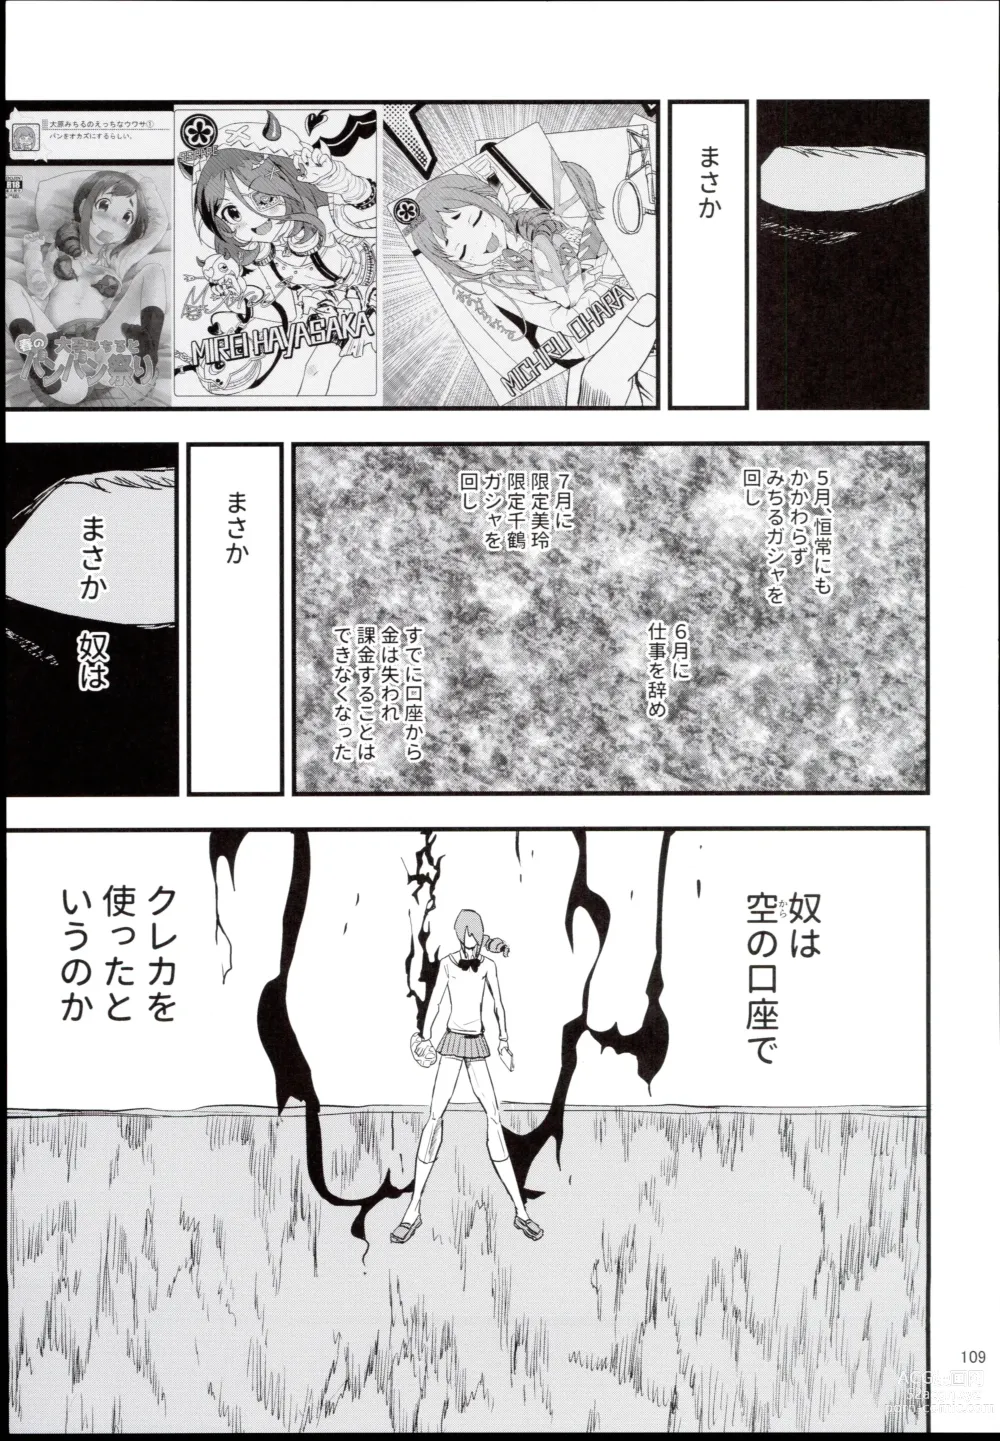 Page 109 of doujinshi Ohara Michiru to Haru no Panpan Matsuri